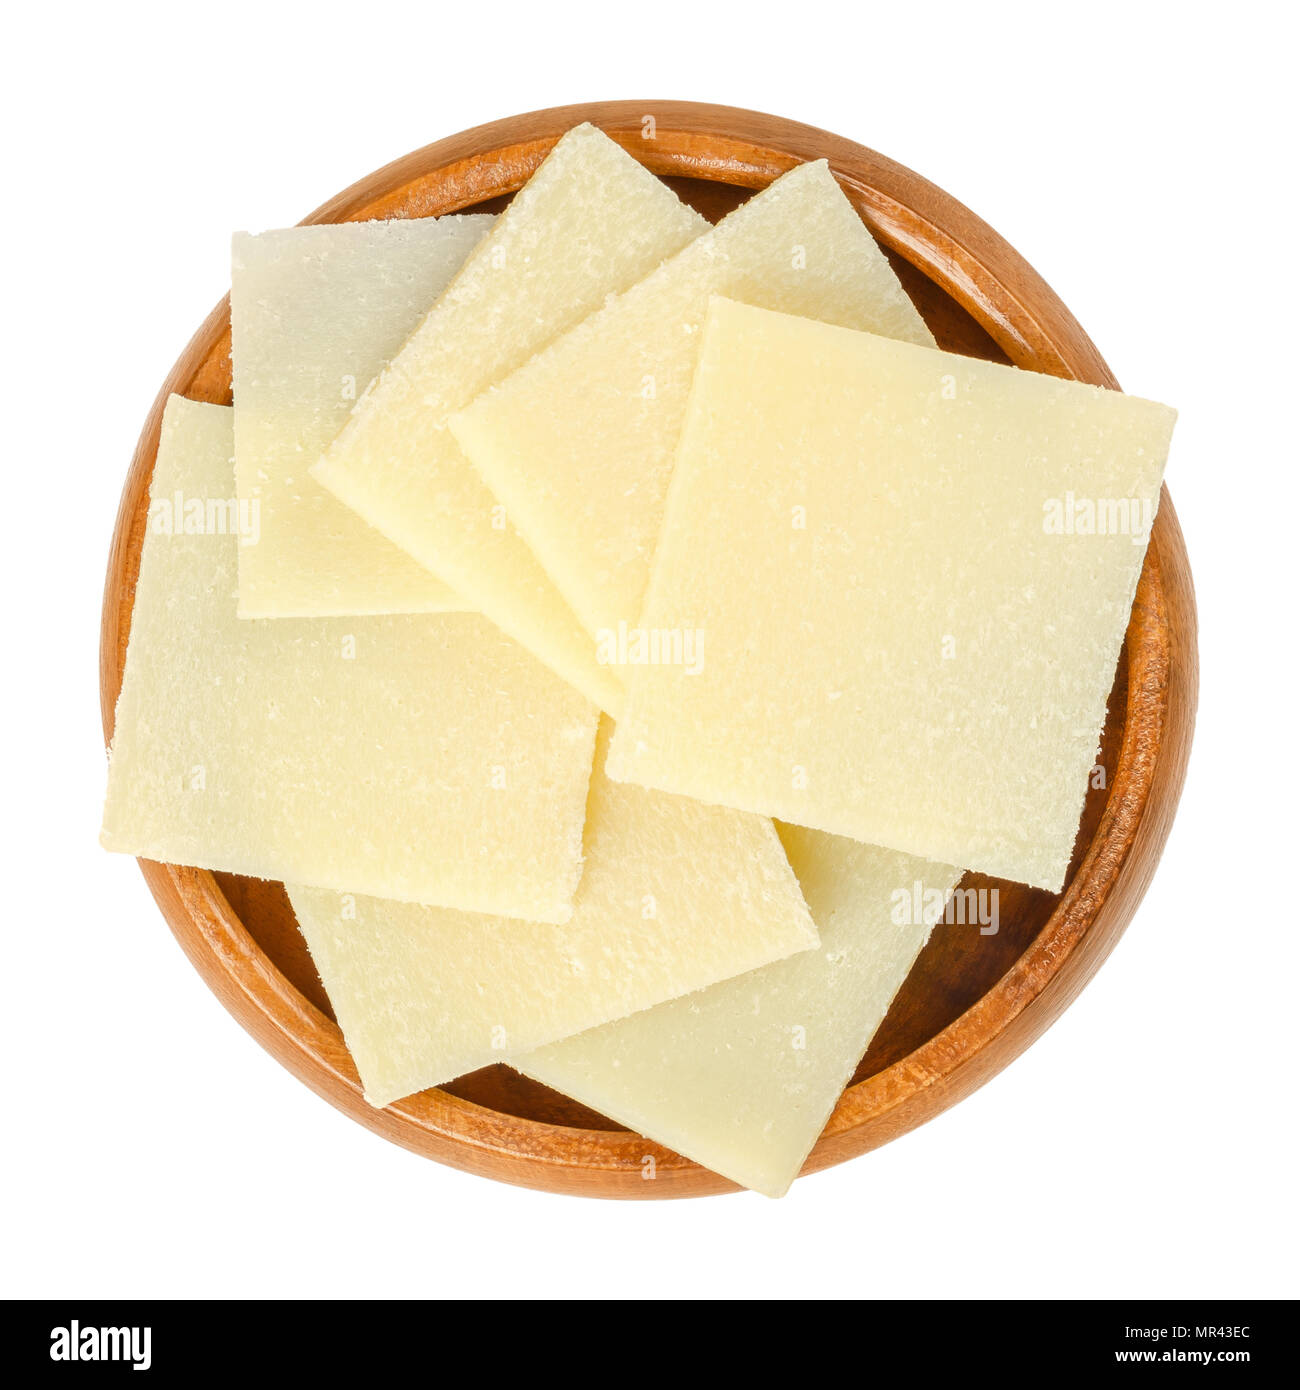 Parmesan Stücke in Houten. Parmigiano-Reggiano. Italienische Harte, körnige Käse, der leicht gelbliche Farbe, aus nicht pasteurisierter Kuhmilch. Stockfoto